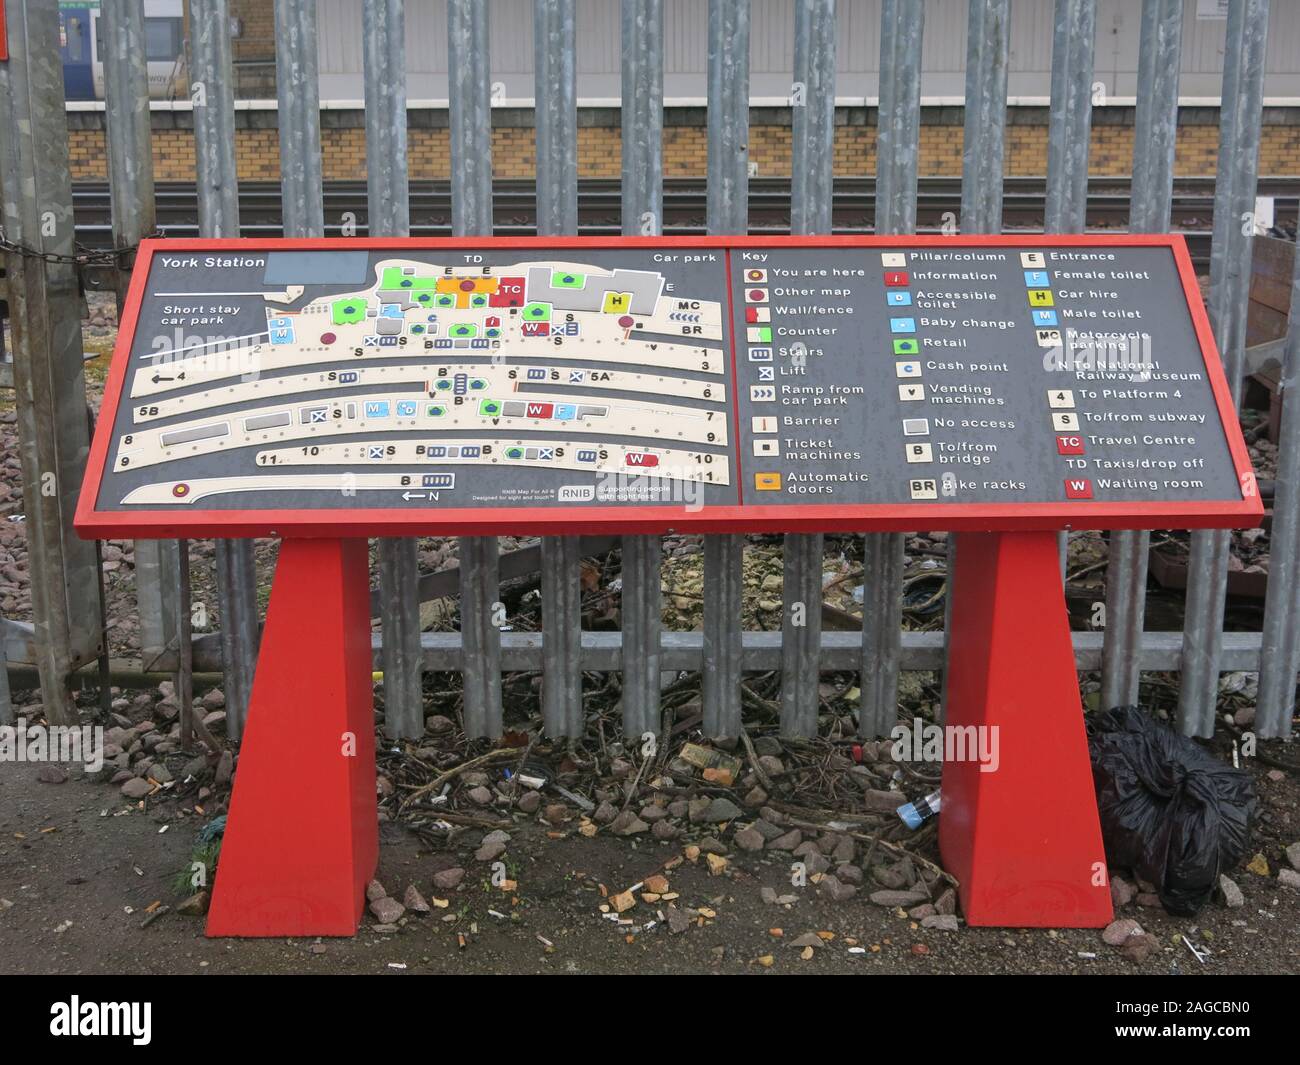 Una sensazione tattile wayfinding guida e mappa di York stazione ferroviaria con il braille e i simboli in rilievo per aiutare i non vedenti. Foto Stock